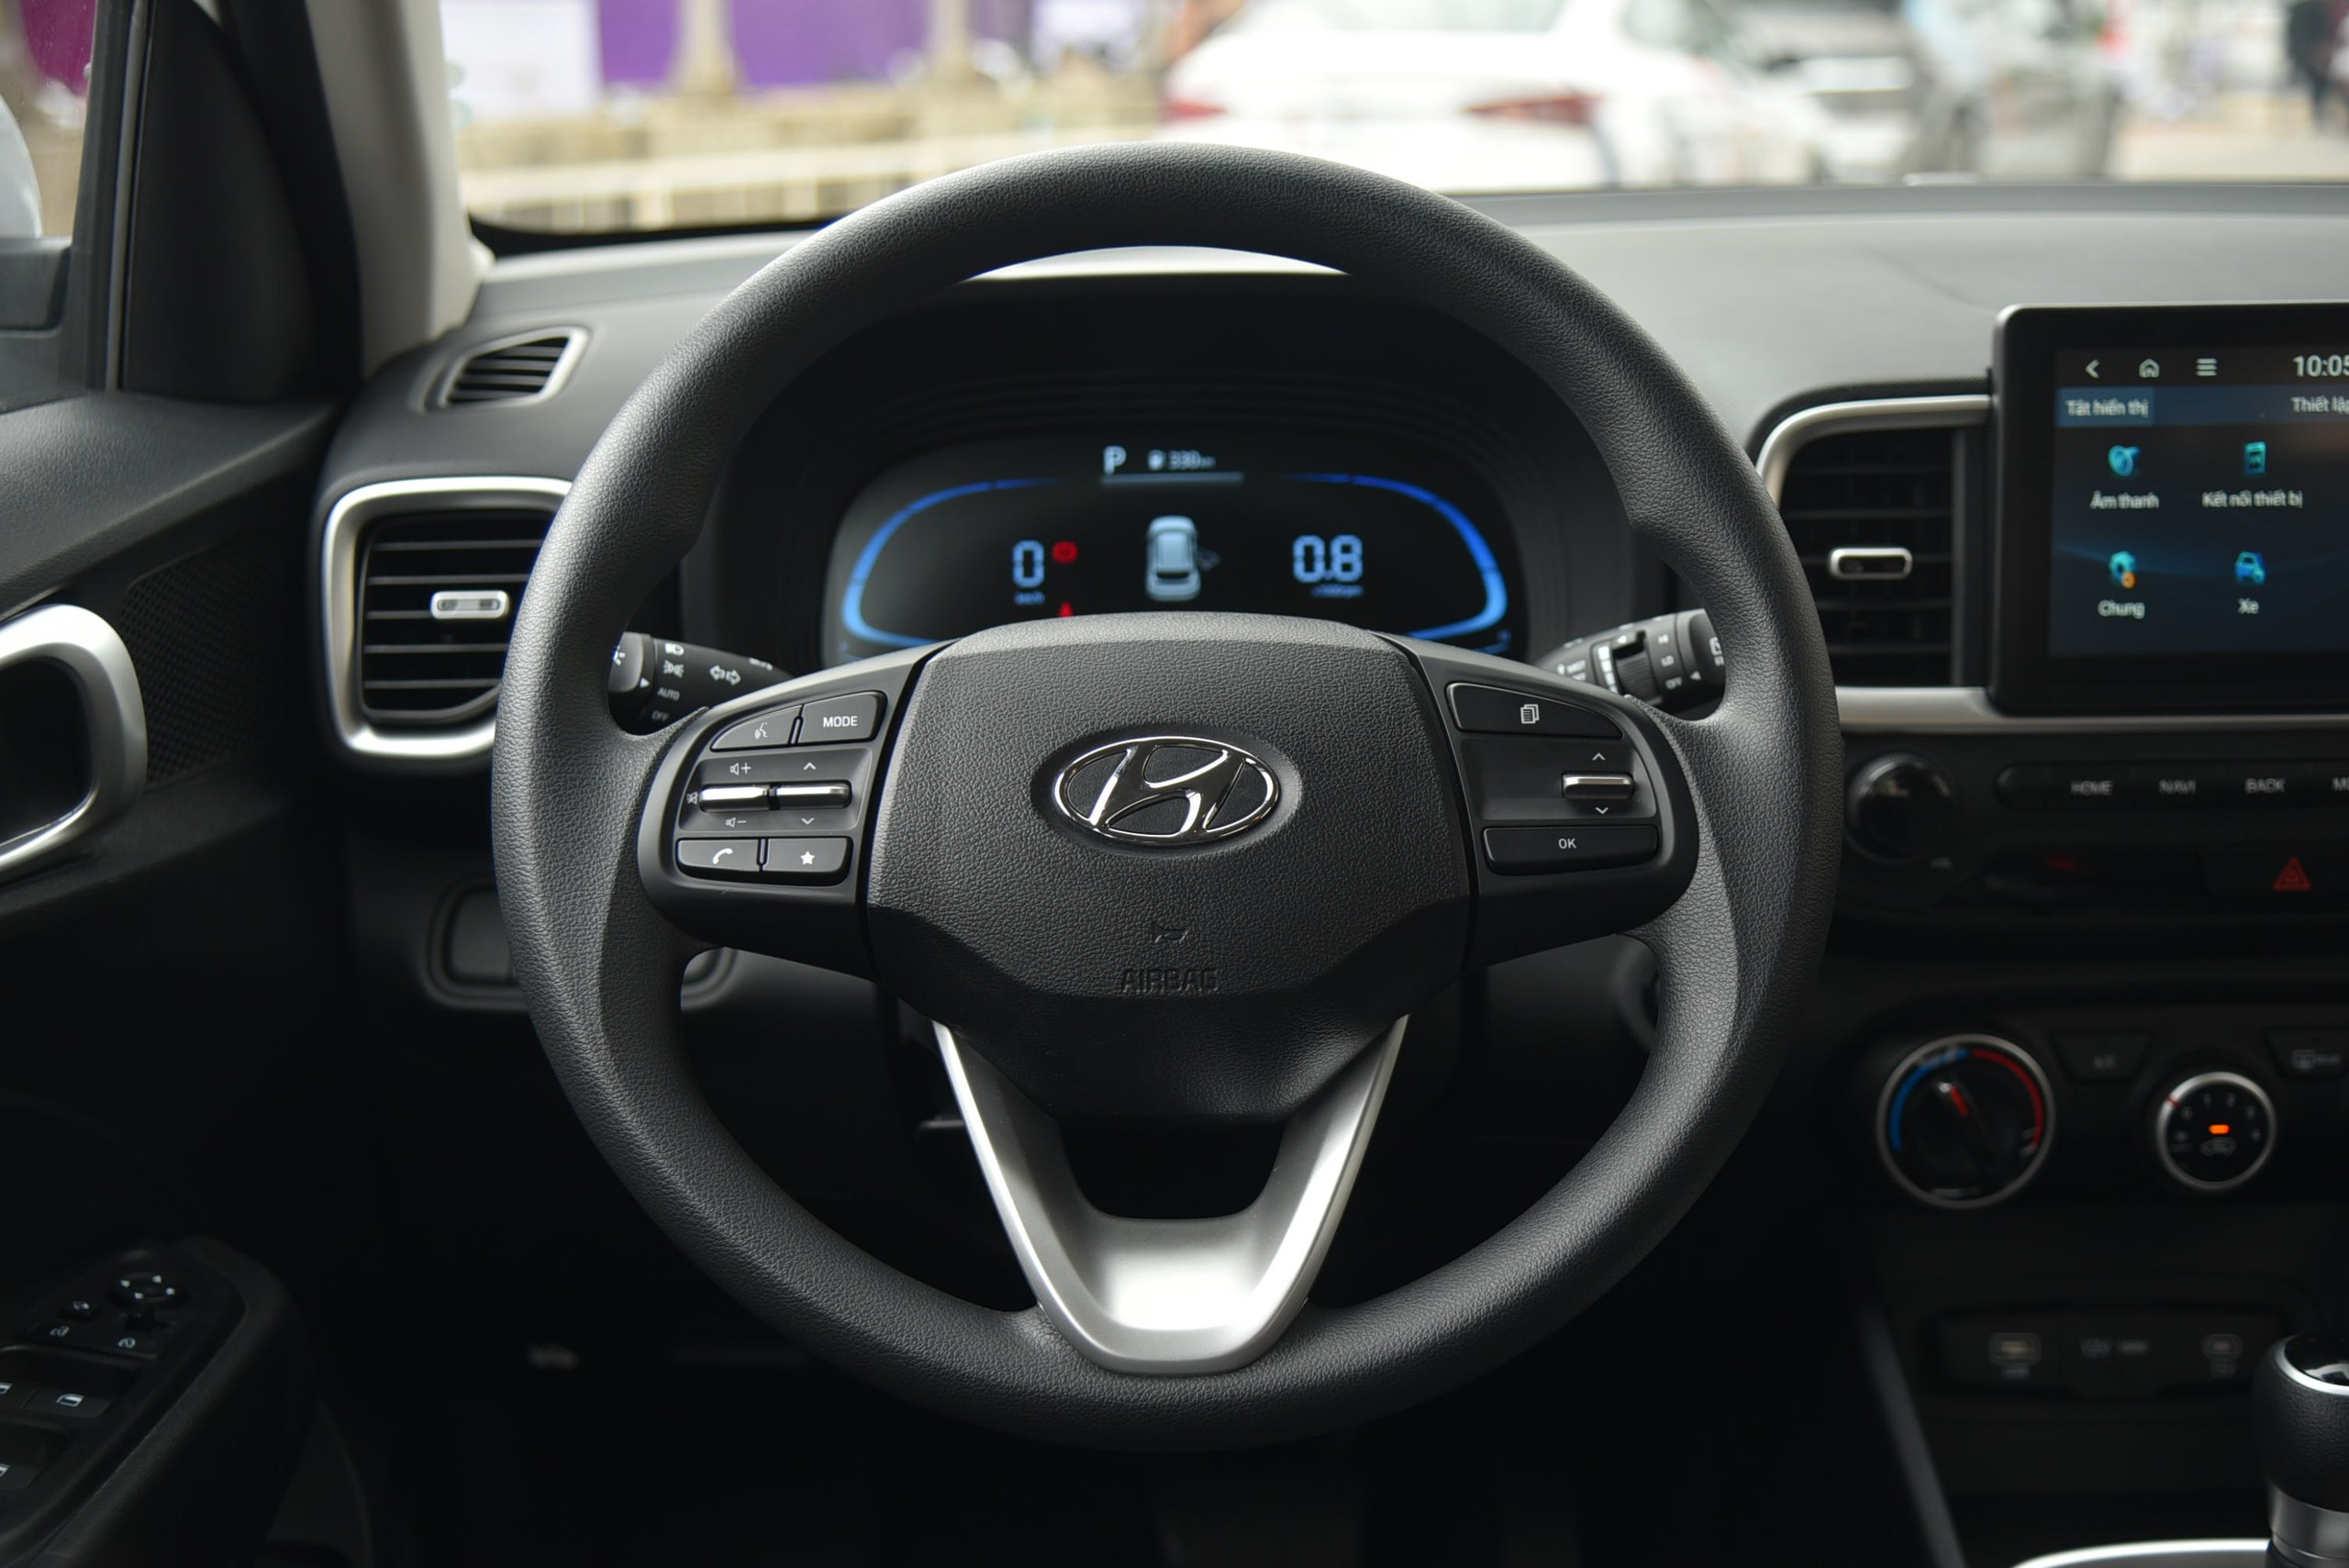 Ngồi thử Hyundai Venue phiên bản tiêu chuẩn: Rẻ hơn 40 triệu đồng, trang bị không khác biệt nhiều - Ảnh 9.